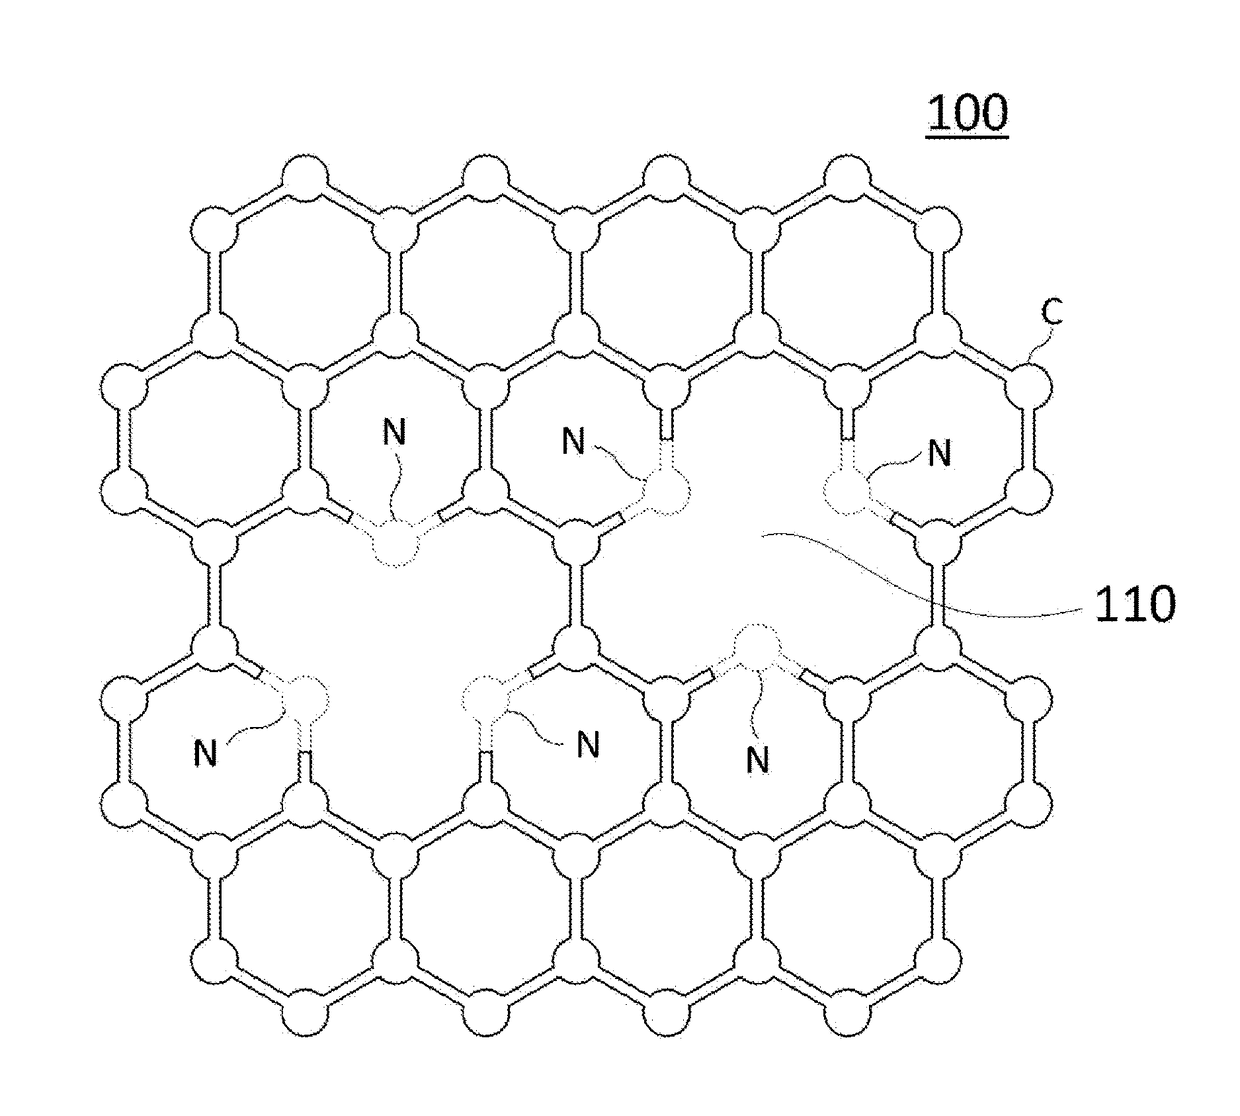 Porous graphene member, method for manufacturing same, and apparatus for manufacturing same using the method